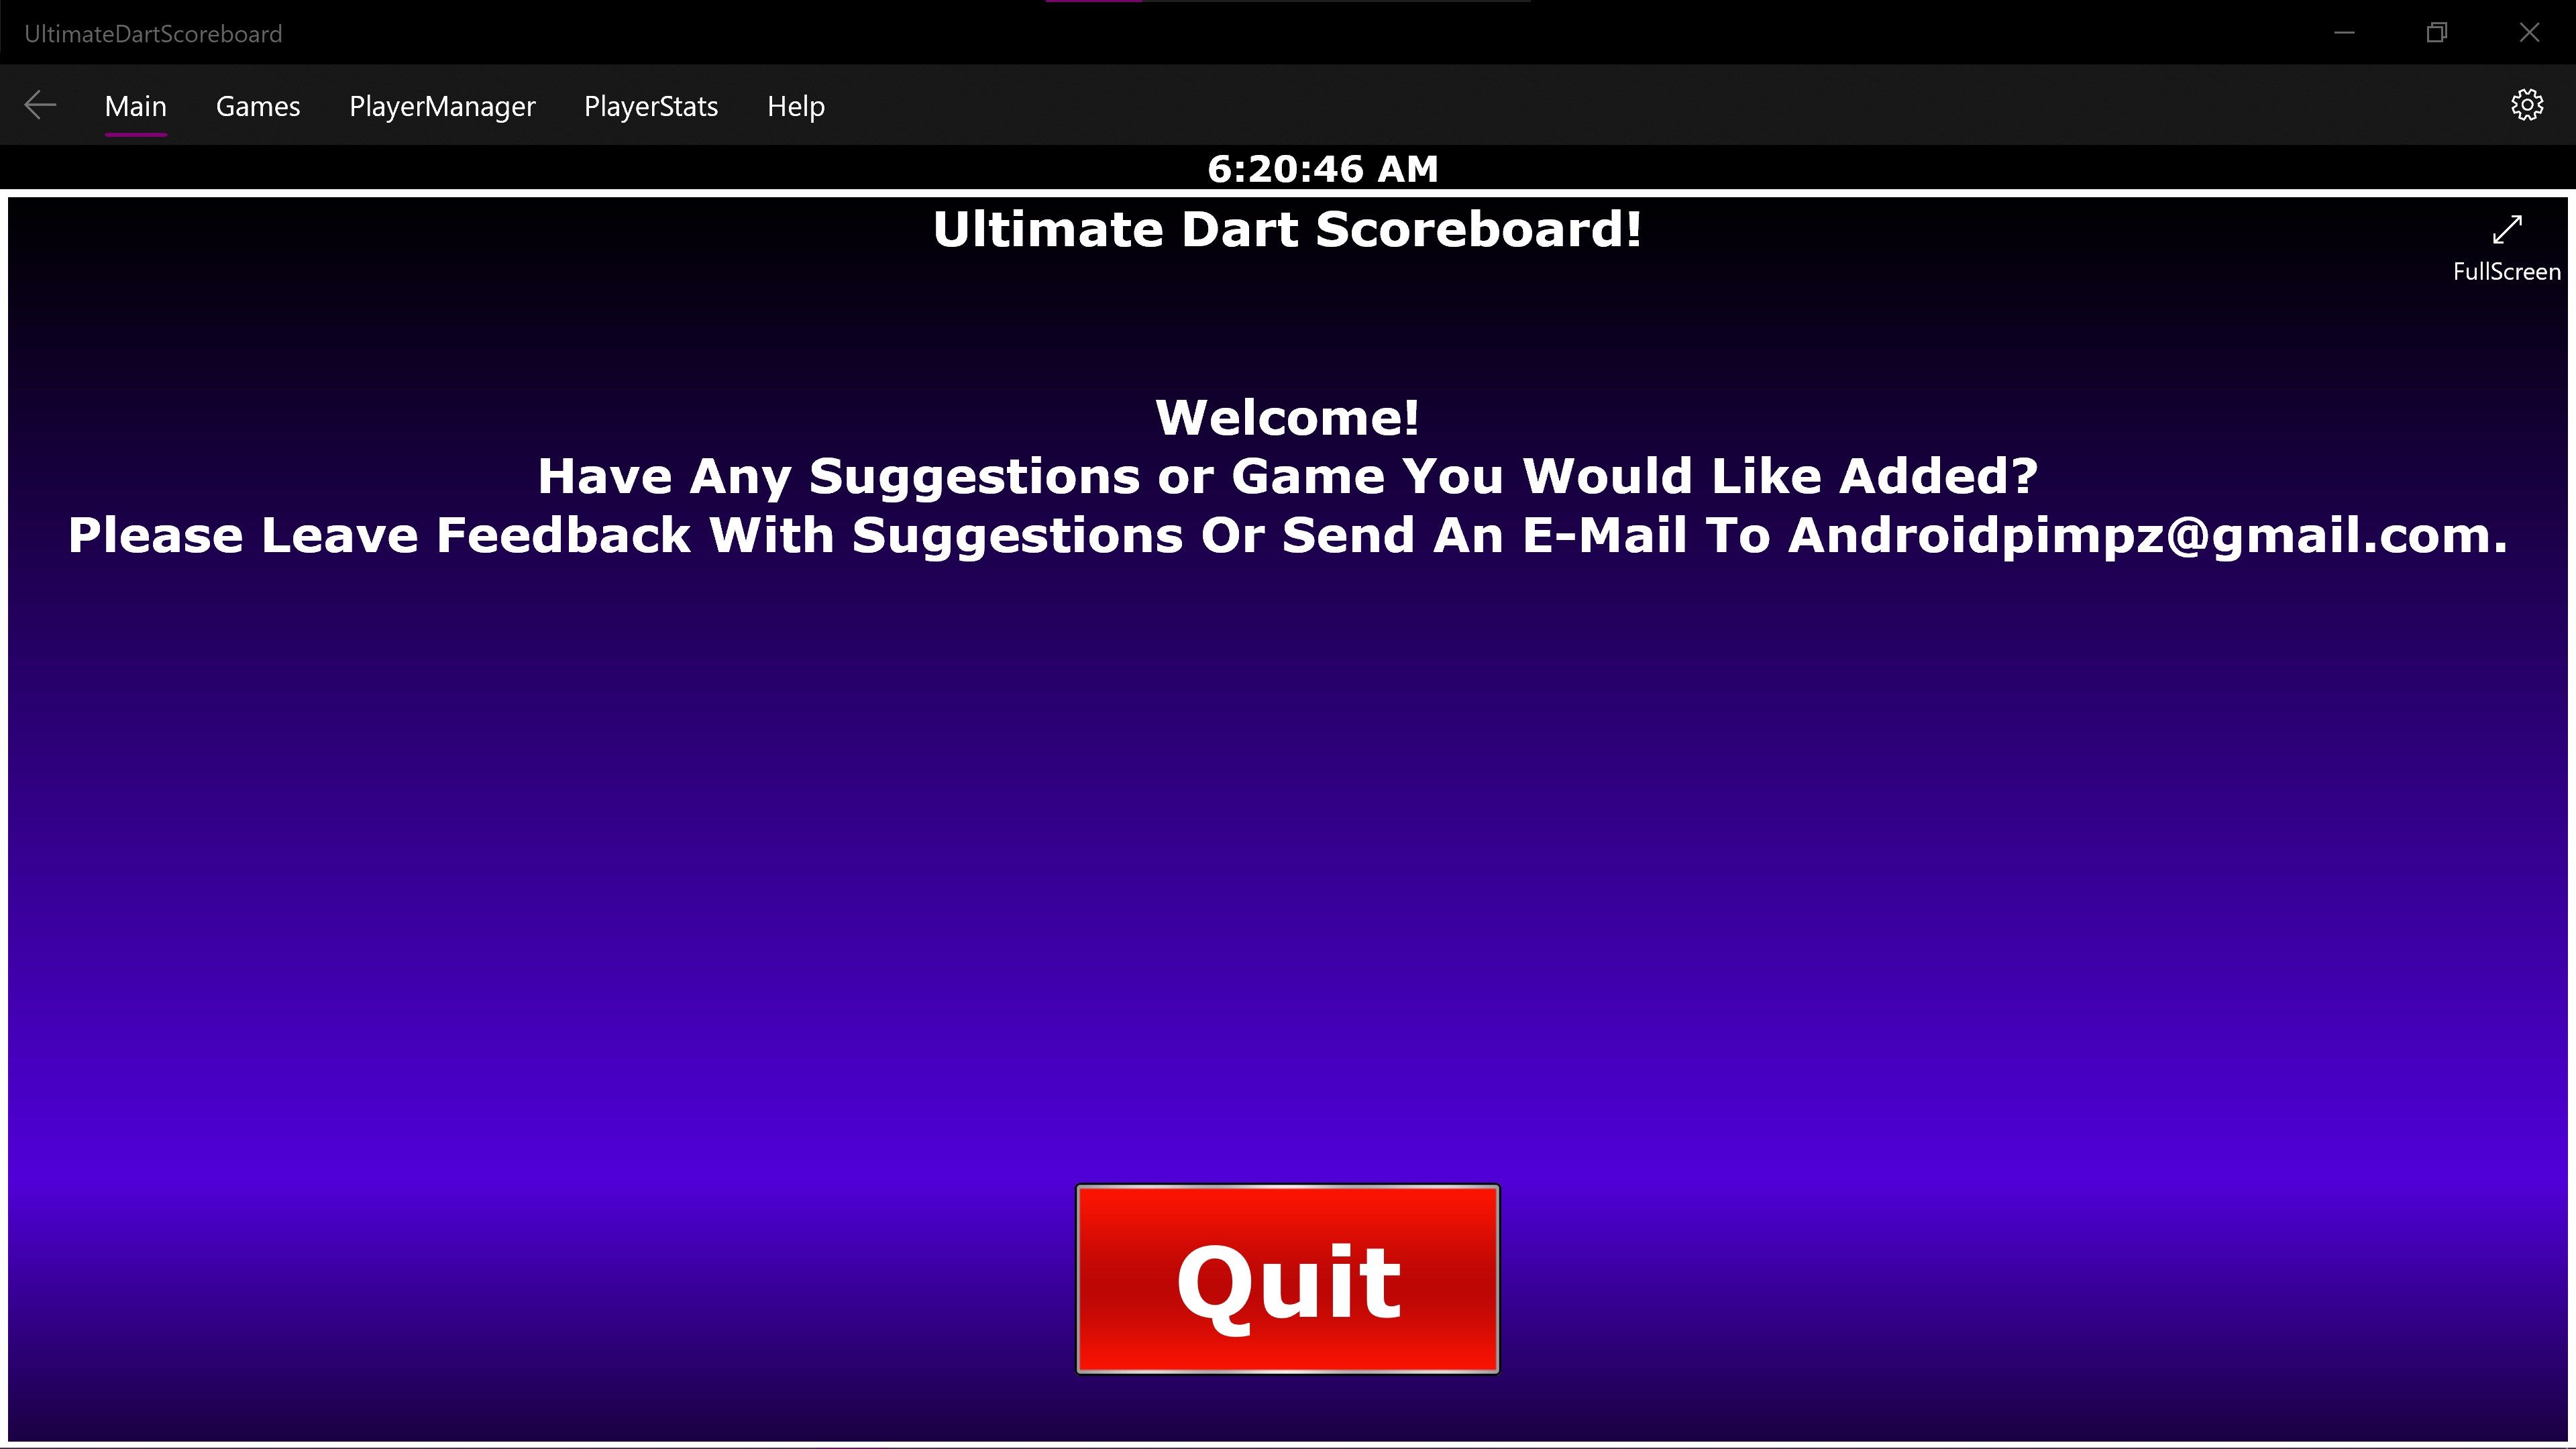 Ultimate Dart Scoreboard